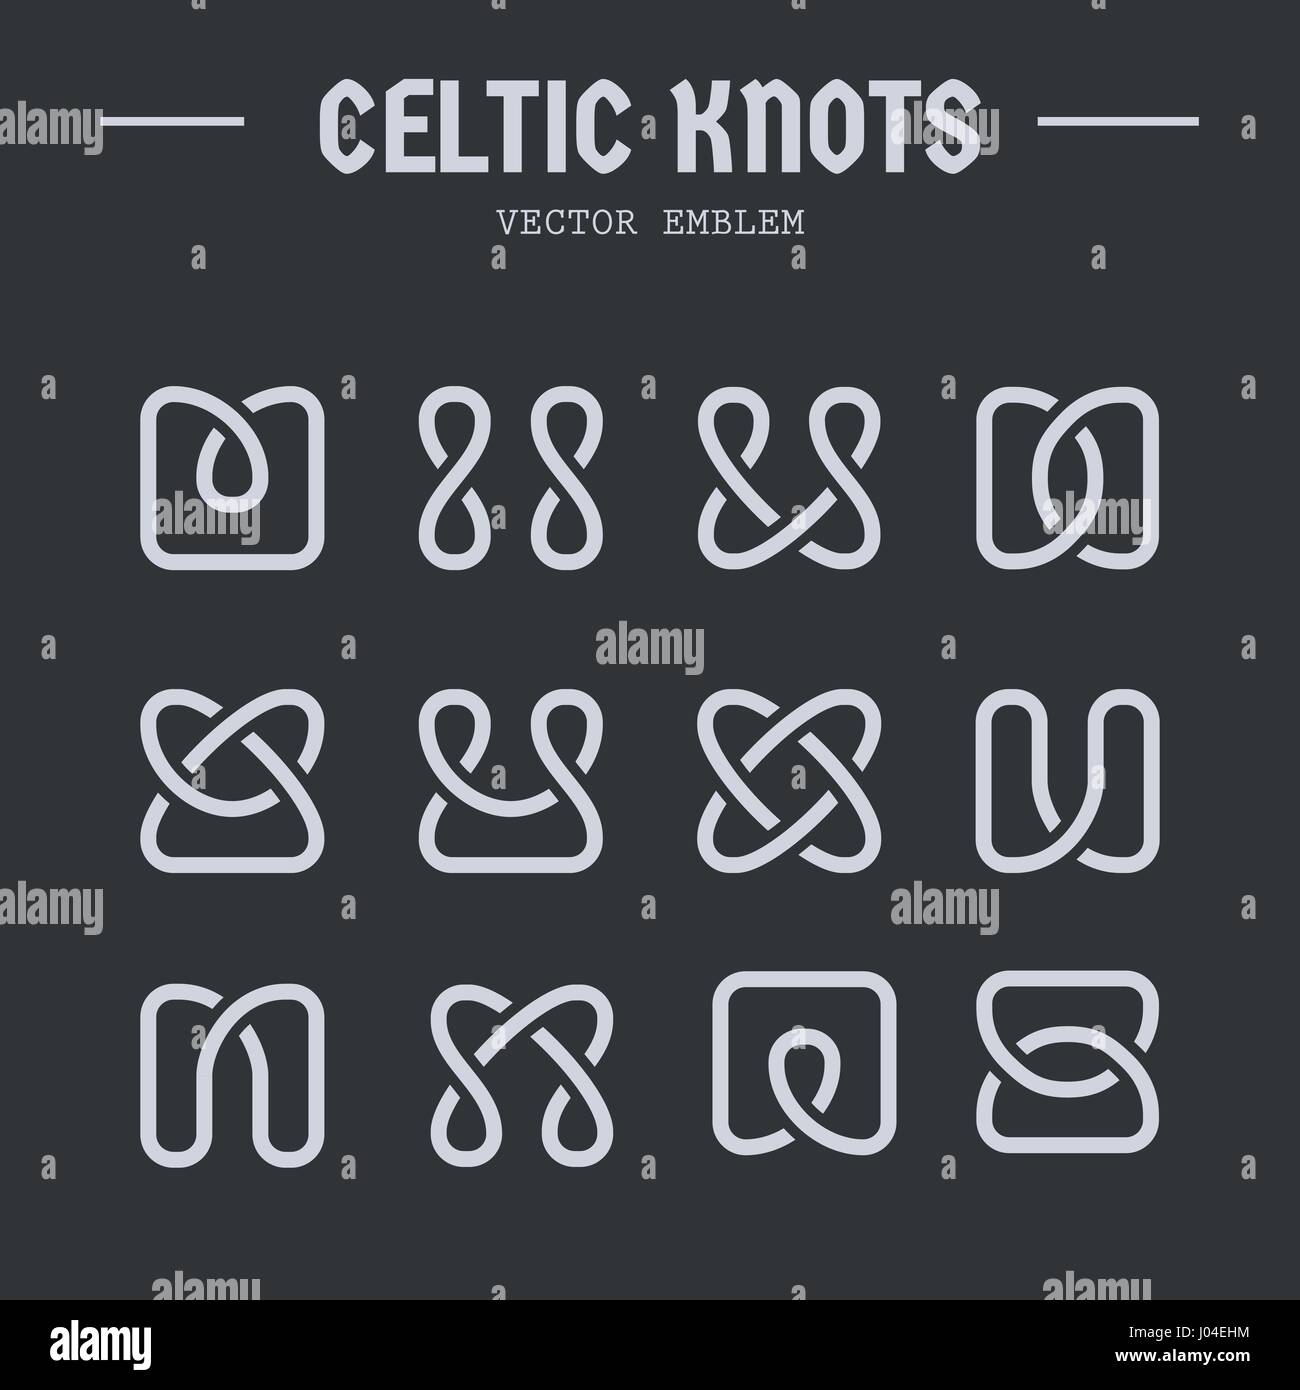 Noeuds celtiques inspiré vector logos collection. Modèle irlandais, ornement, éléments simples sur fond sombre Illustration de Vecteur